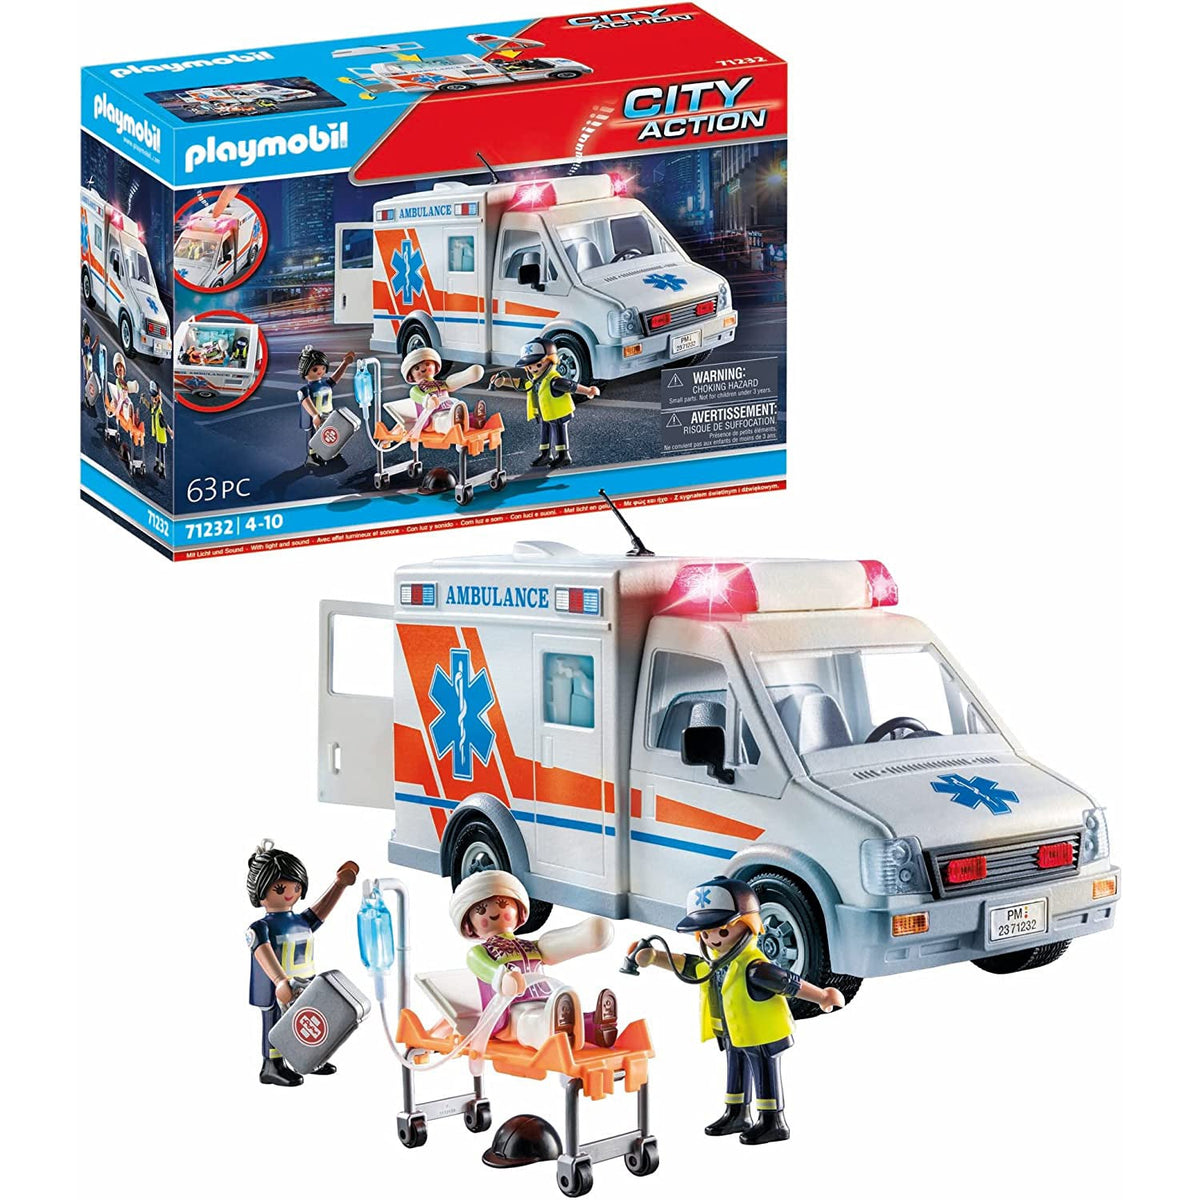 Ambulance - 71232